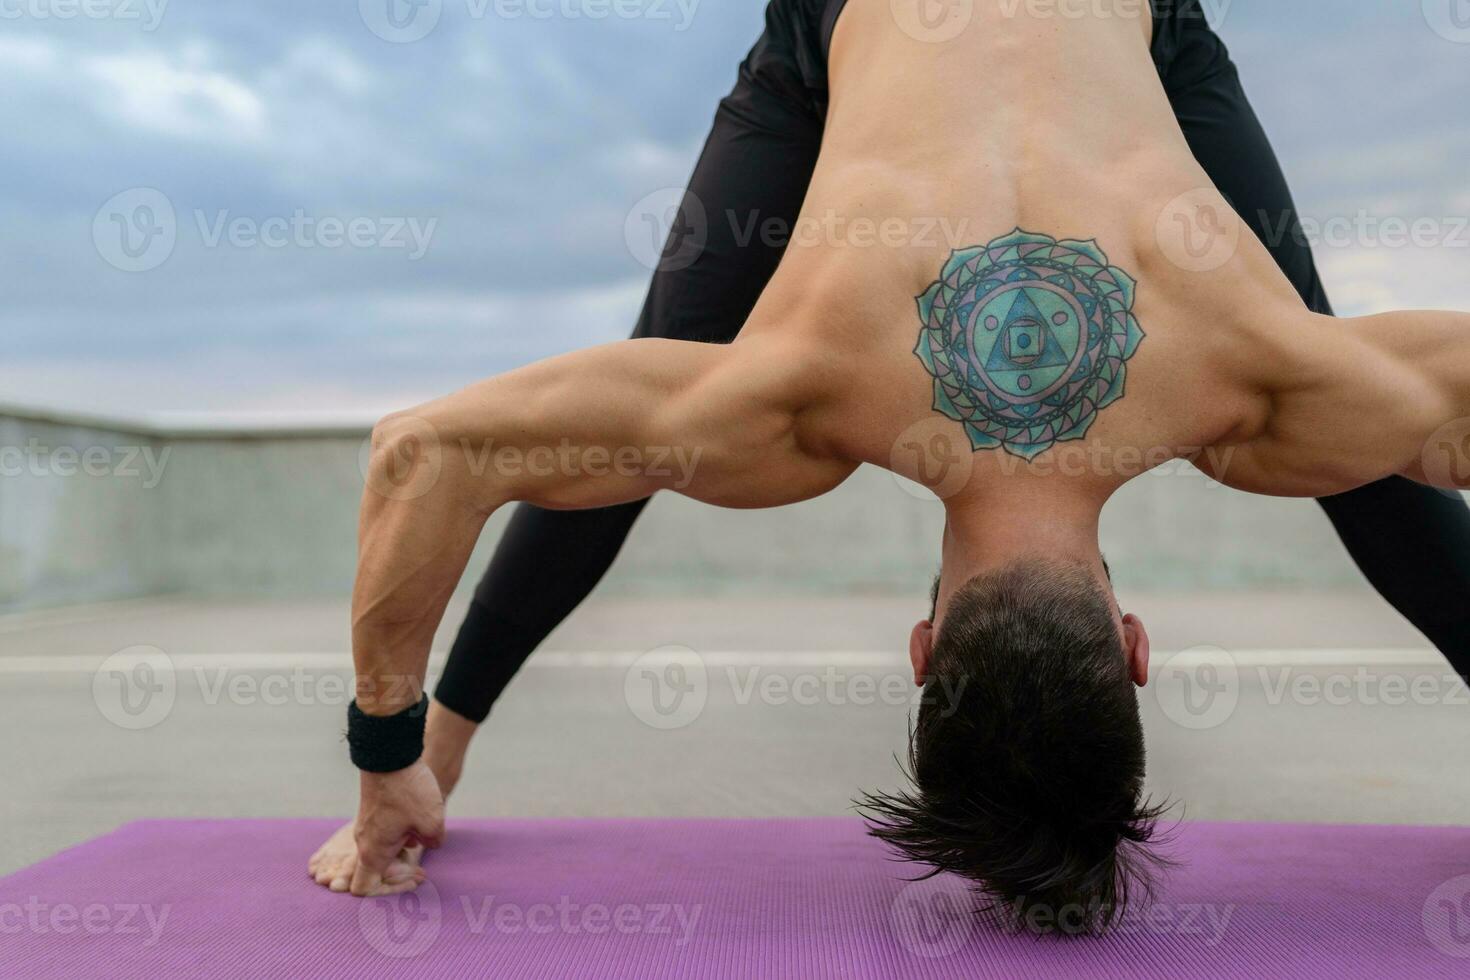 atraente hansome homem com Atlético Forte corpo fazendo manhã ioga asana ao ar livre foto